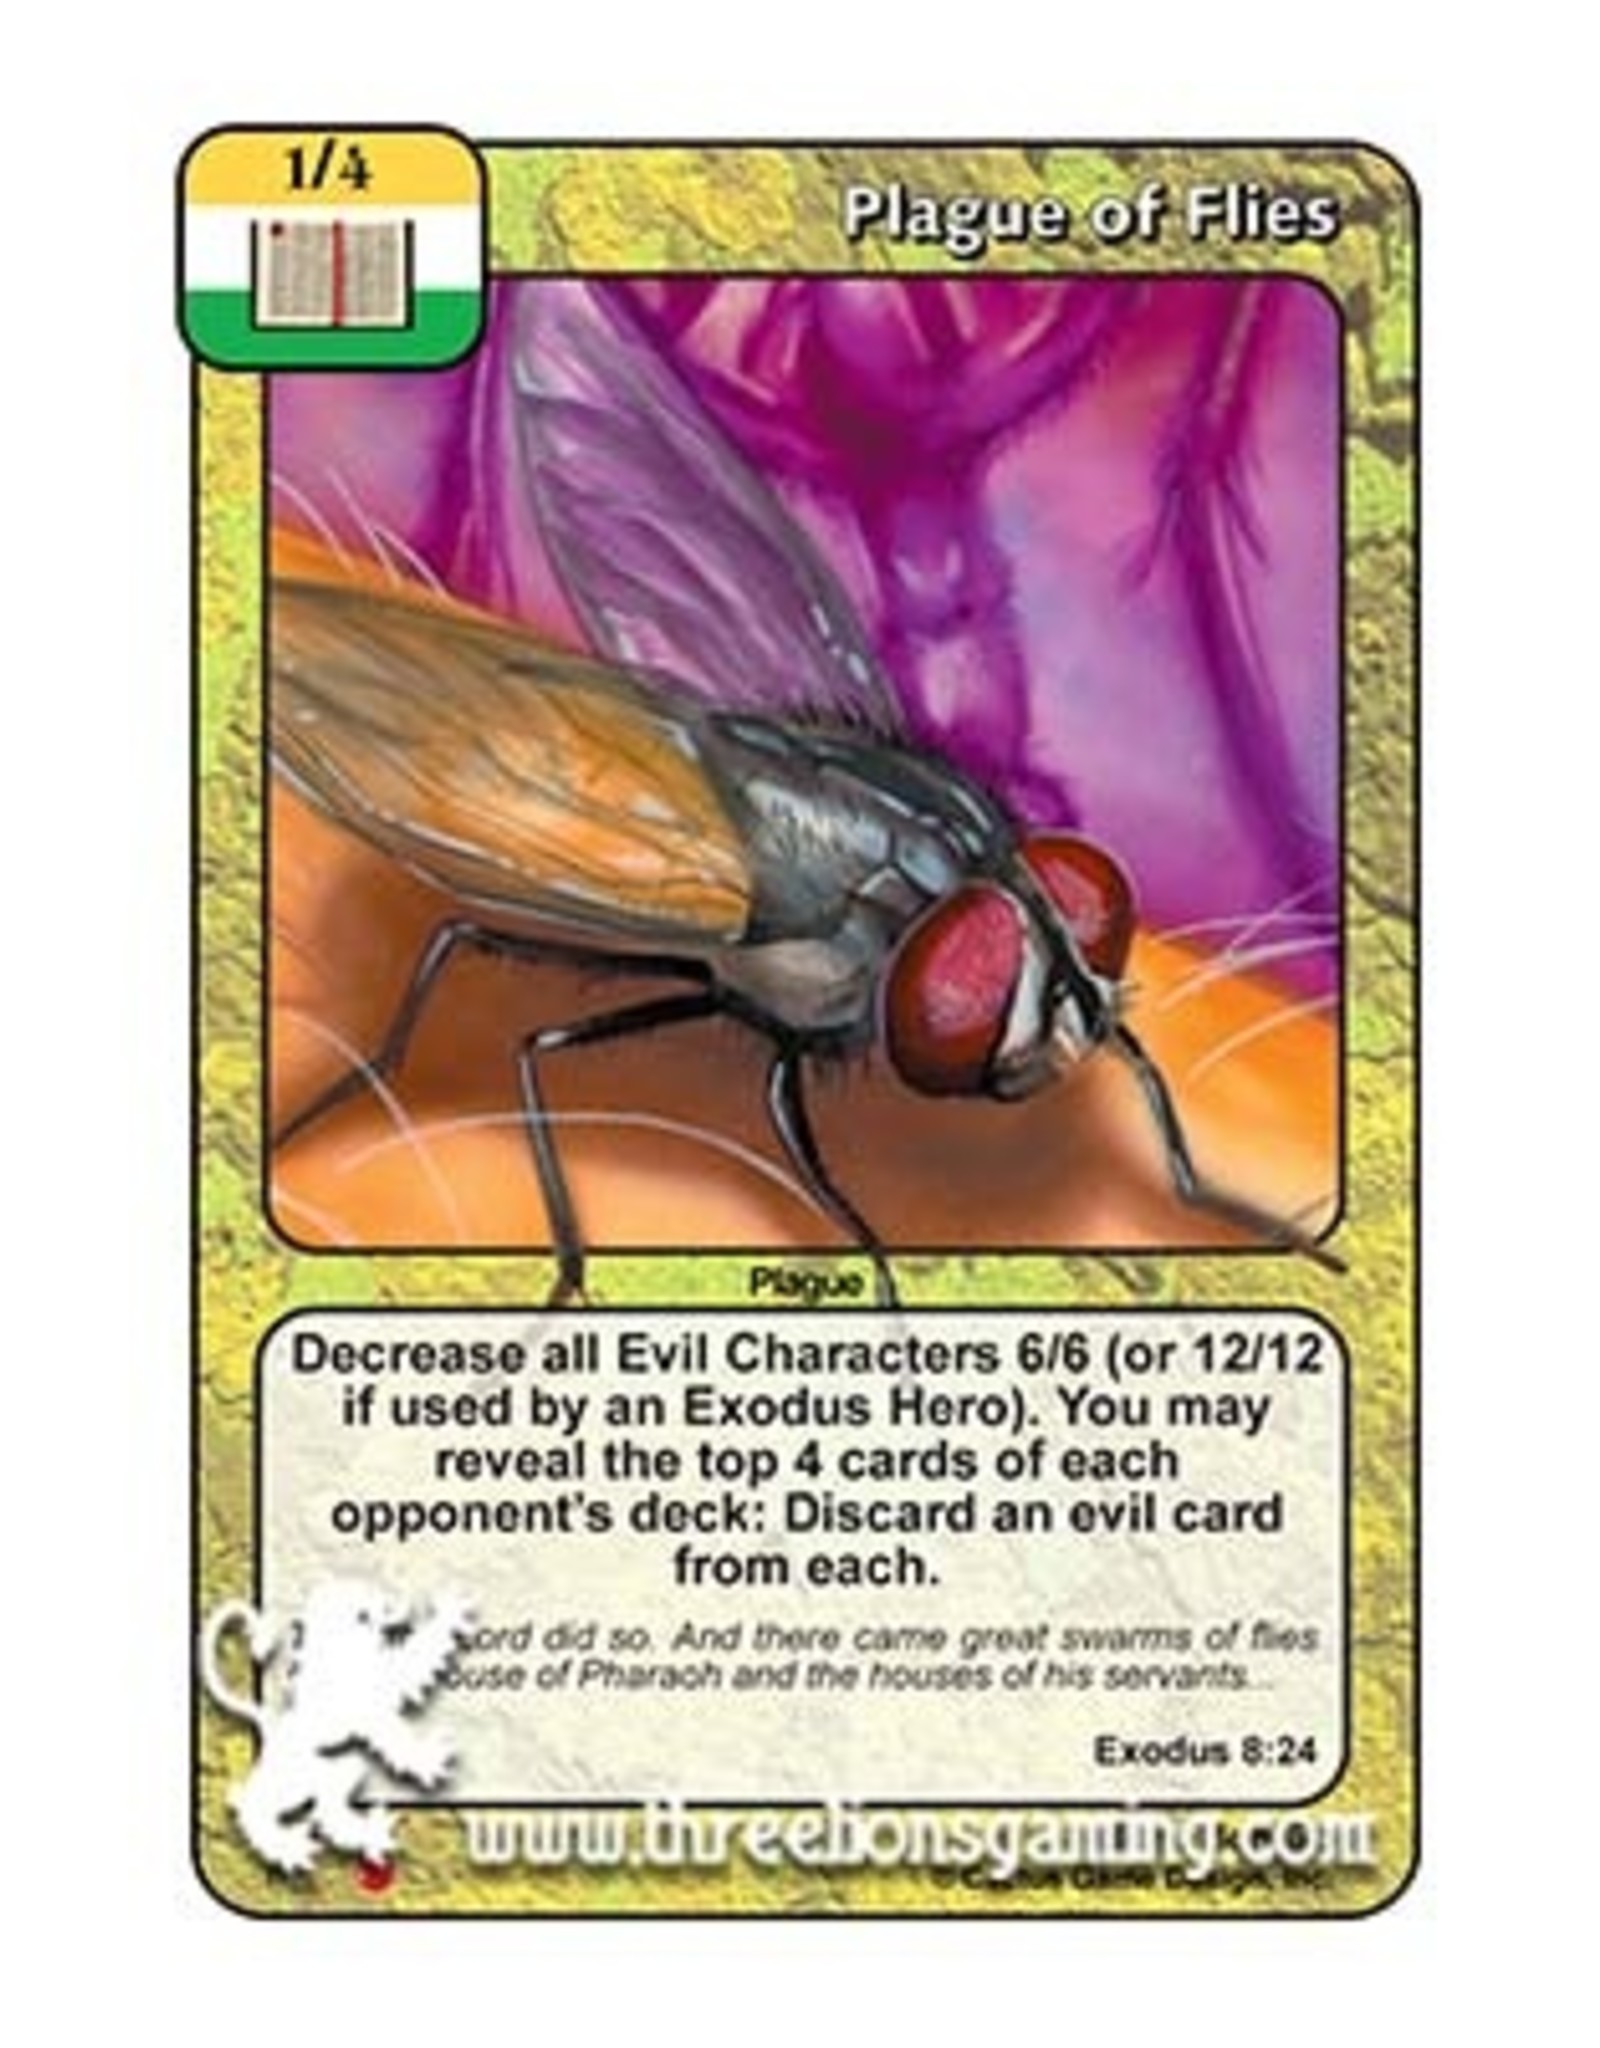 LoC: Plague of Flies